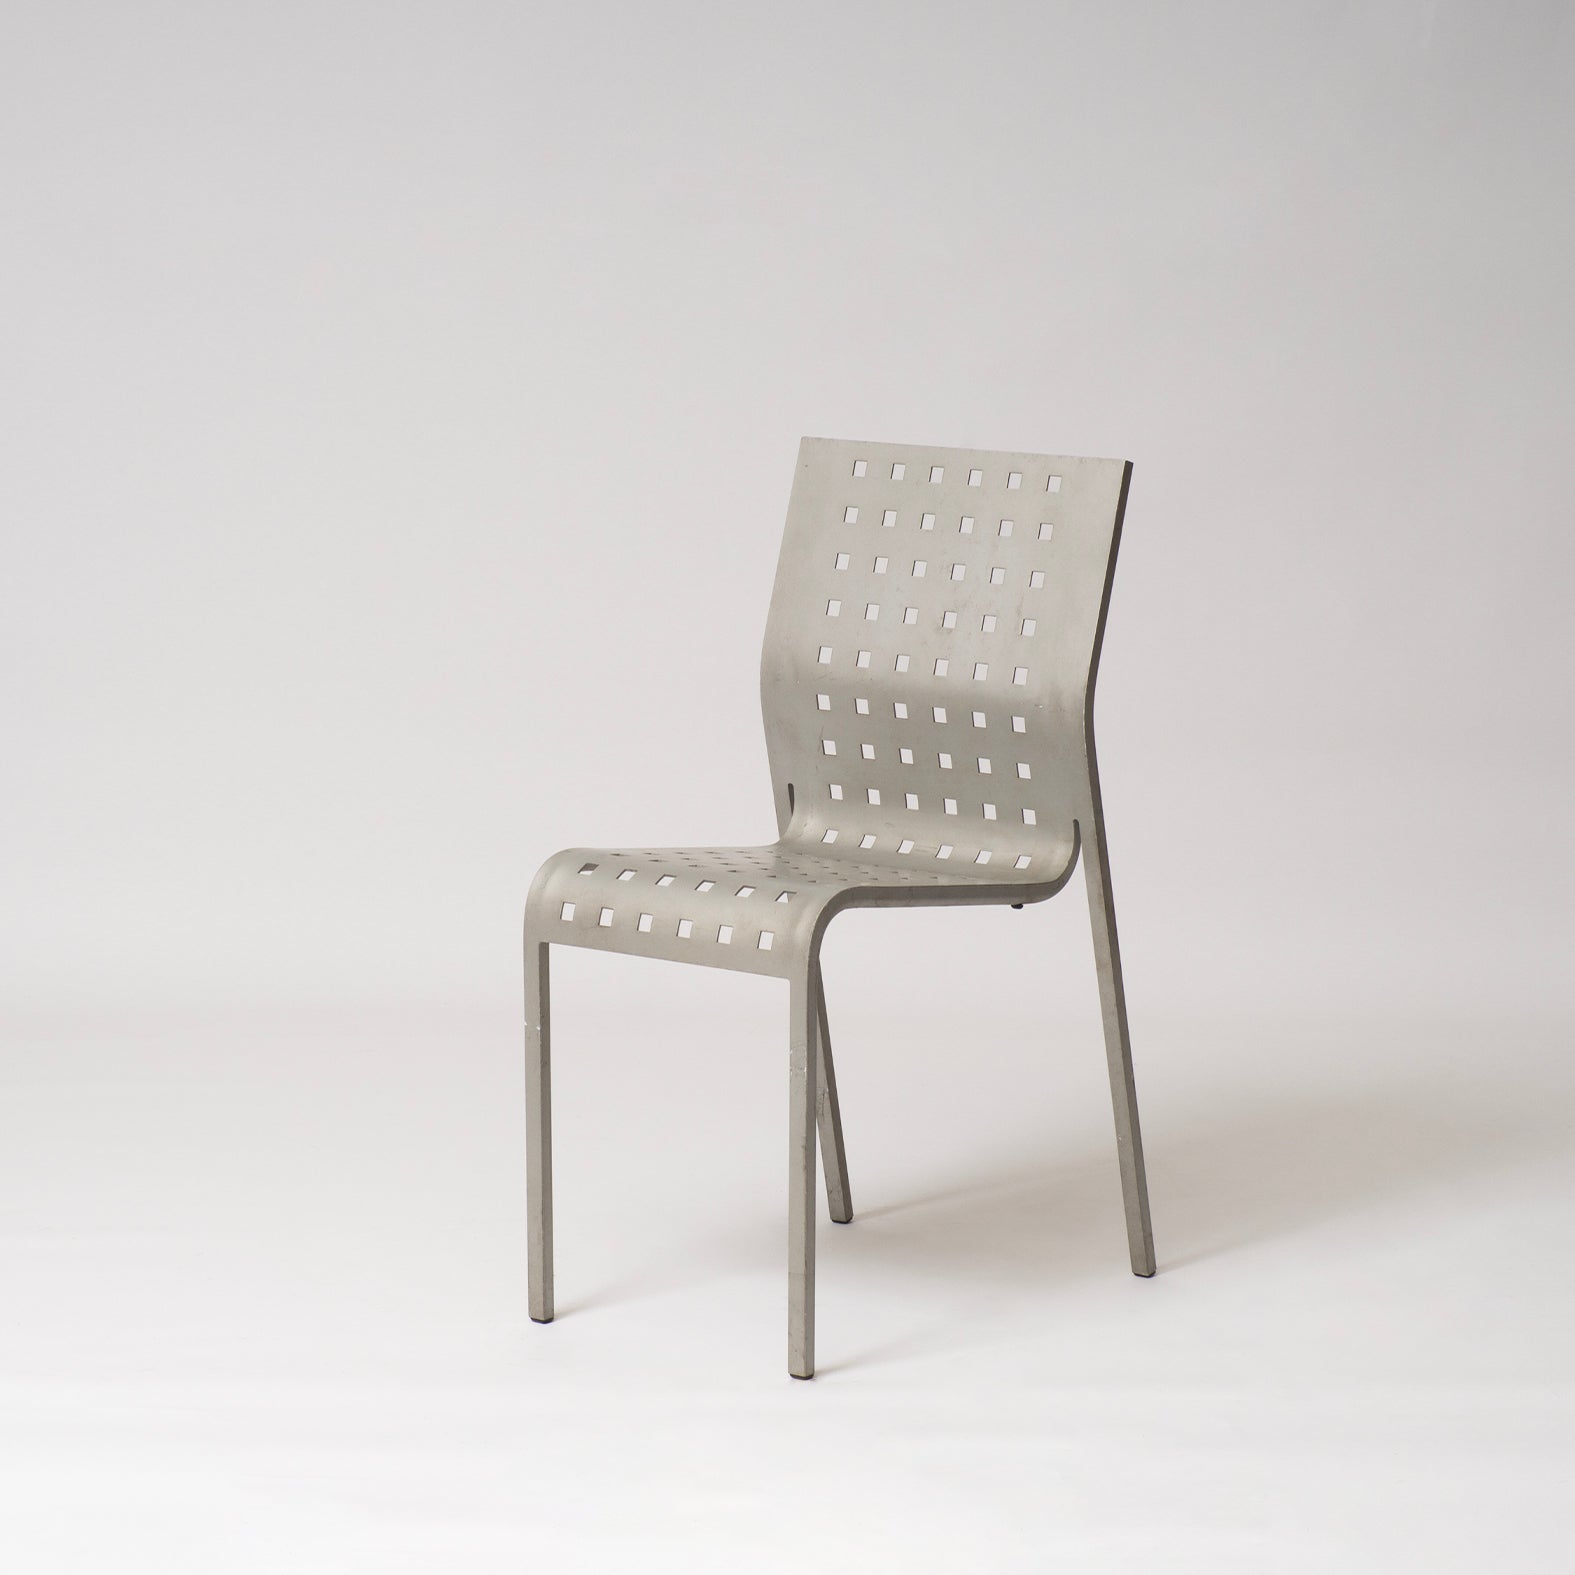 Mirandolina chairs No 2068 by Pietro Arosio